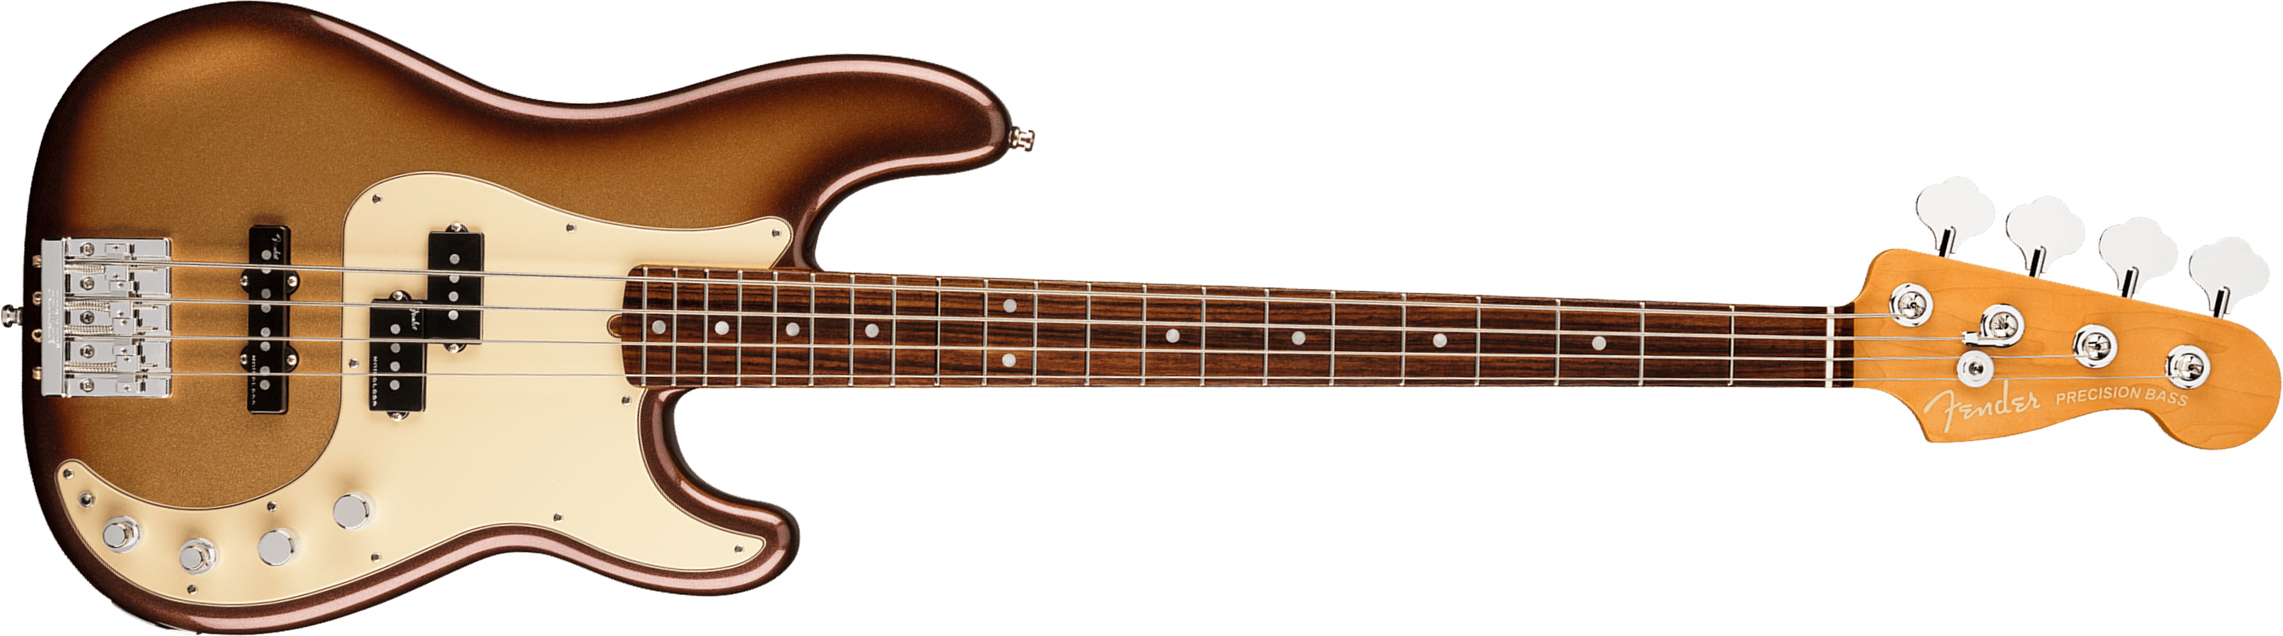 Fender Precision Bass American Ultra 2019 Usa Rw - Mocha Burst - Bajo eléctrico de cuerpo sólido - Main picture